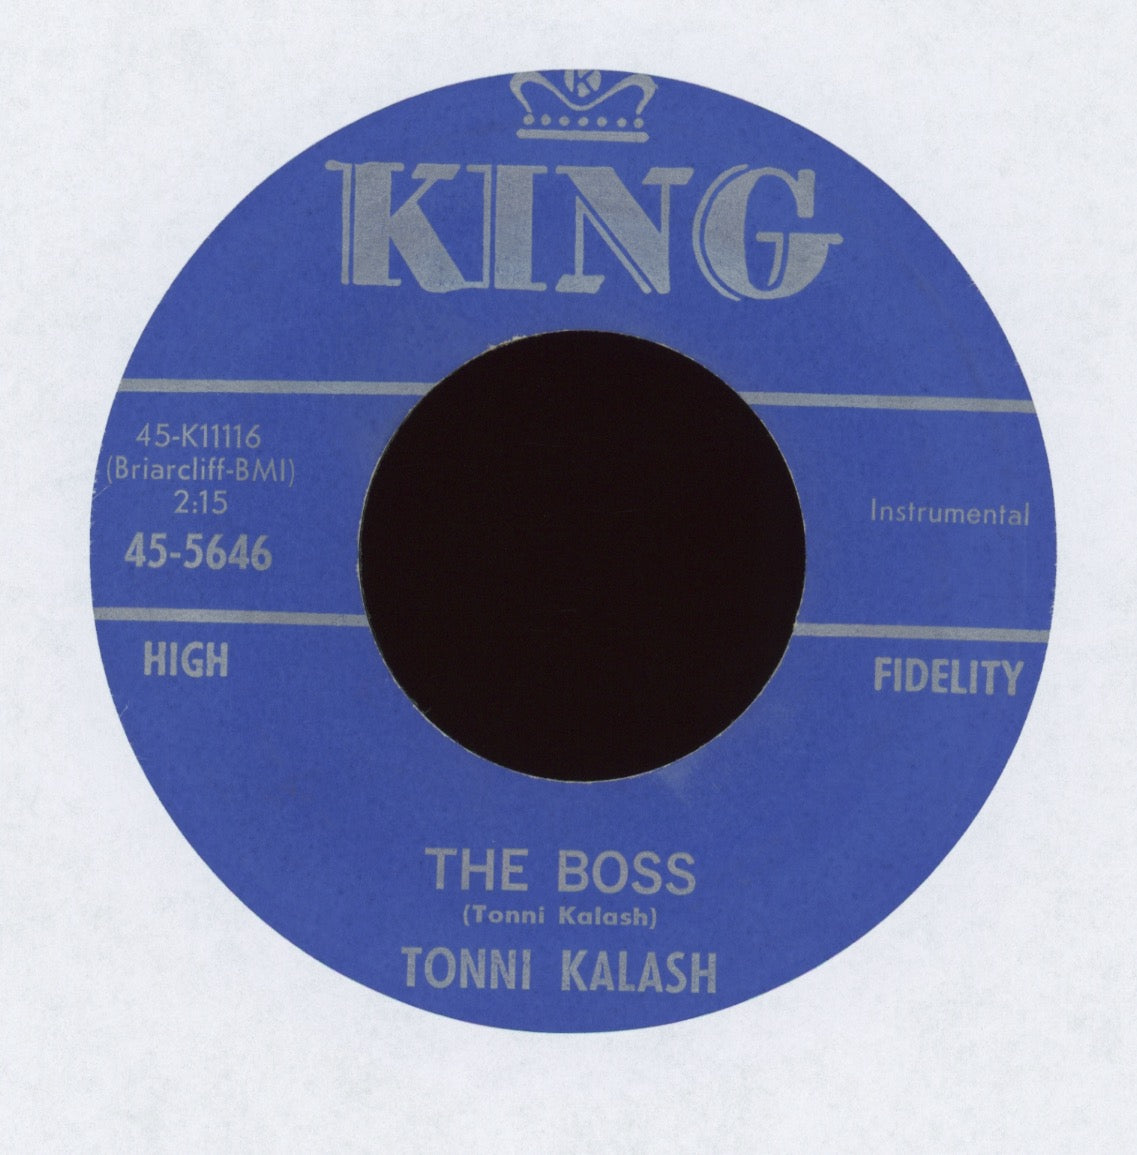 Tonni Kalash - The Boss on King